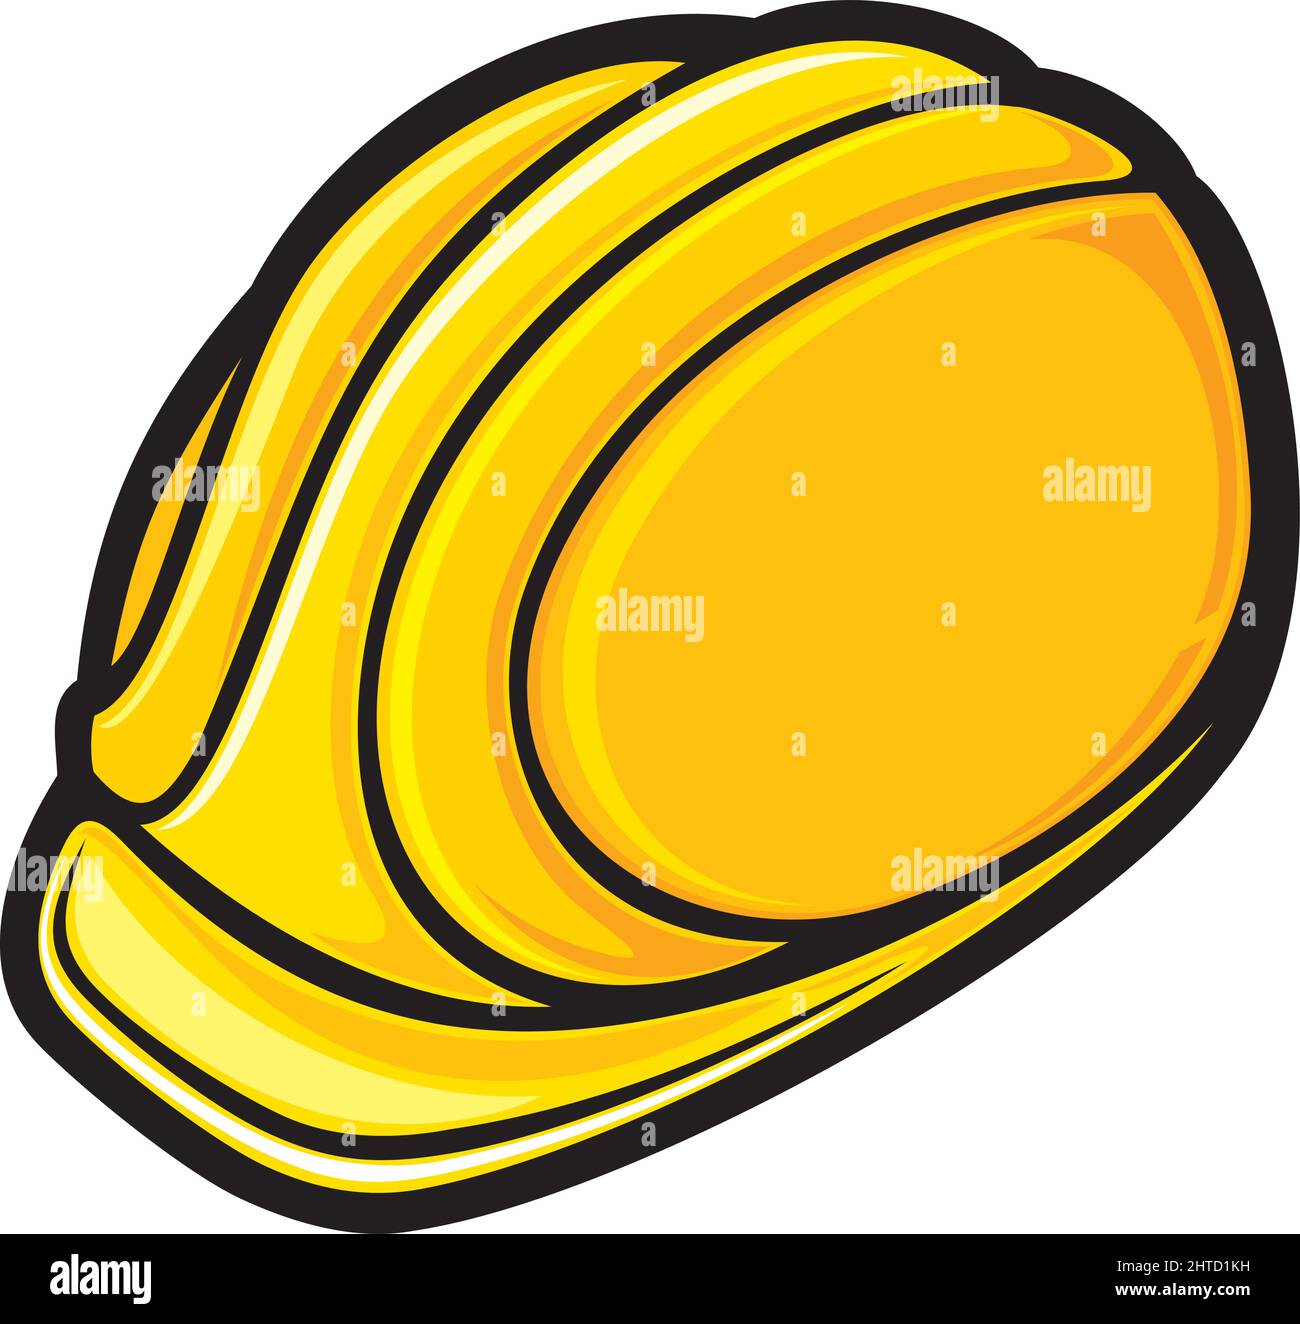 Illustrazione vettoriale dell'elmetto (casco protettivo) per lavoratori edili Illustrazione Vettoriale